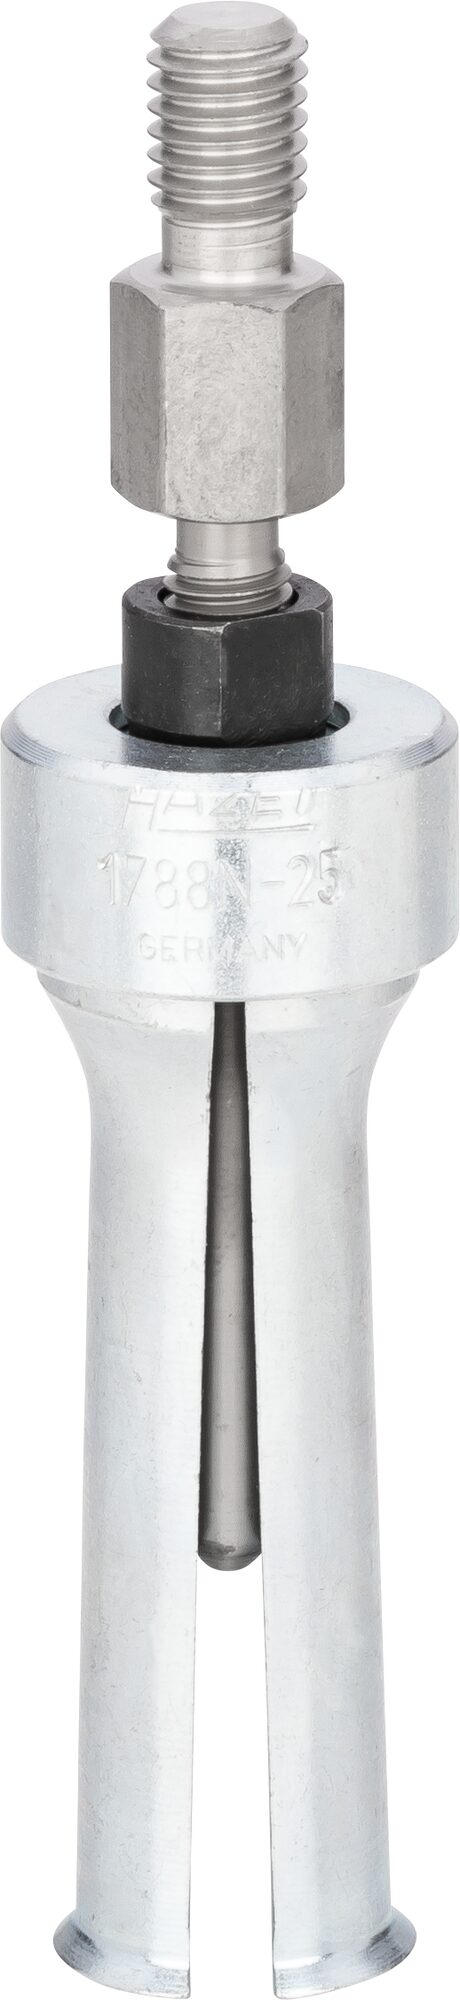 HAZET Innen-Auszieher 1788N-25 · 19–25 mm